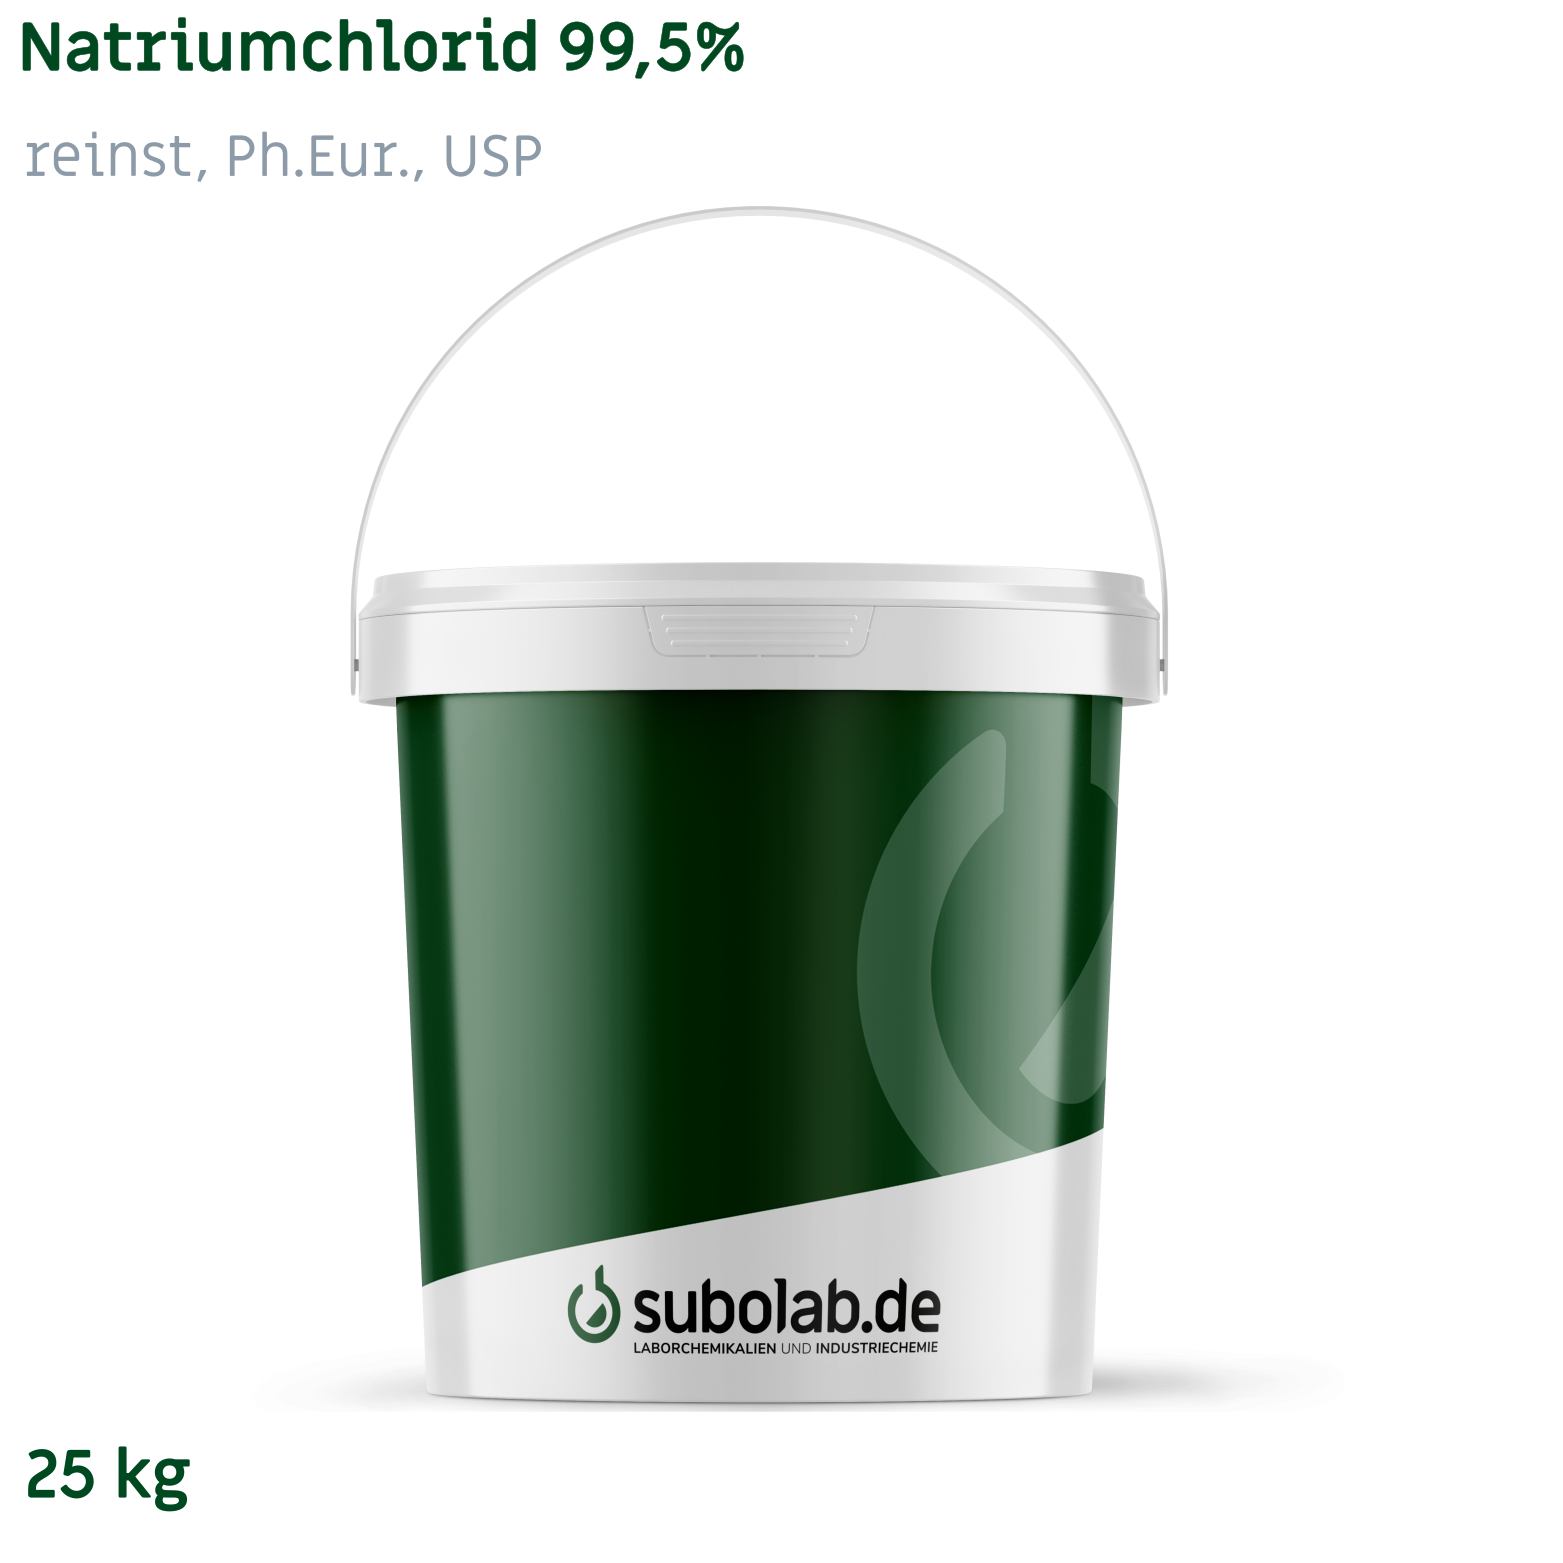 Bild von Natriumchlorid 99,5% reinst, Ph.Eur., USP (25 kg)